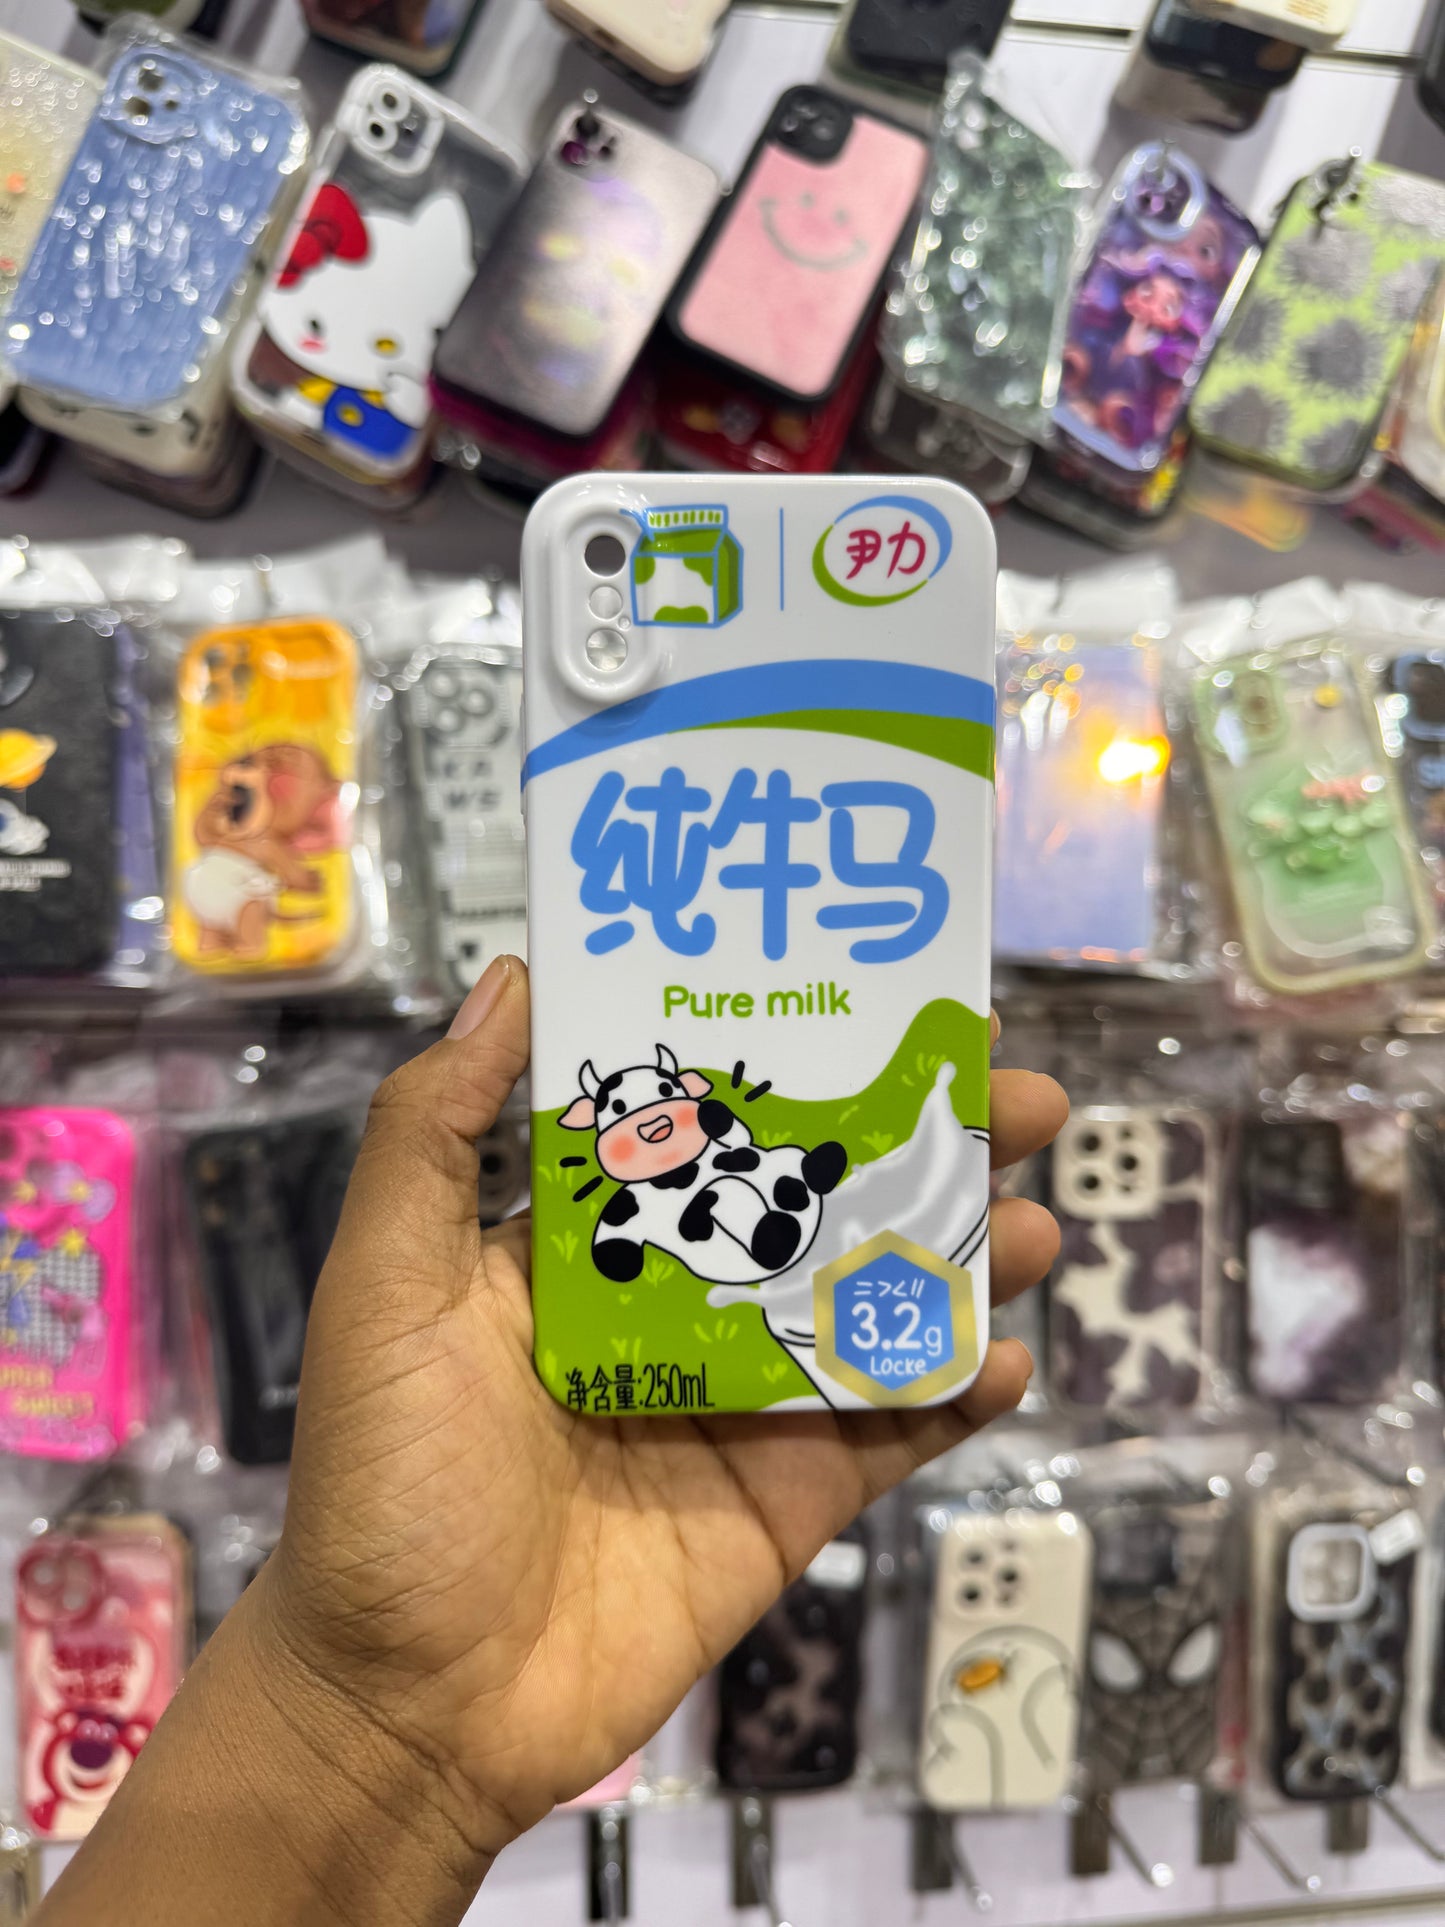 Pure milk case for iPhones